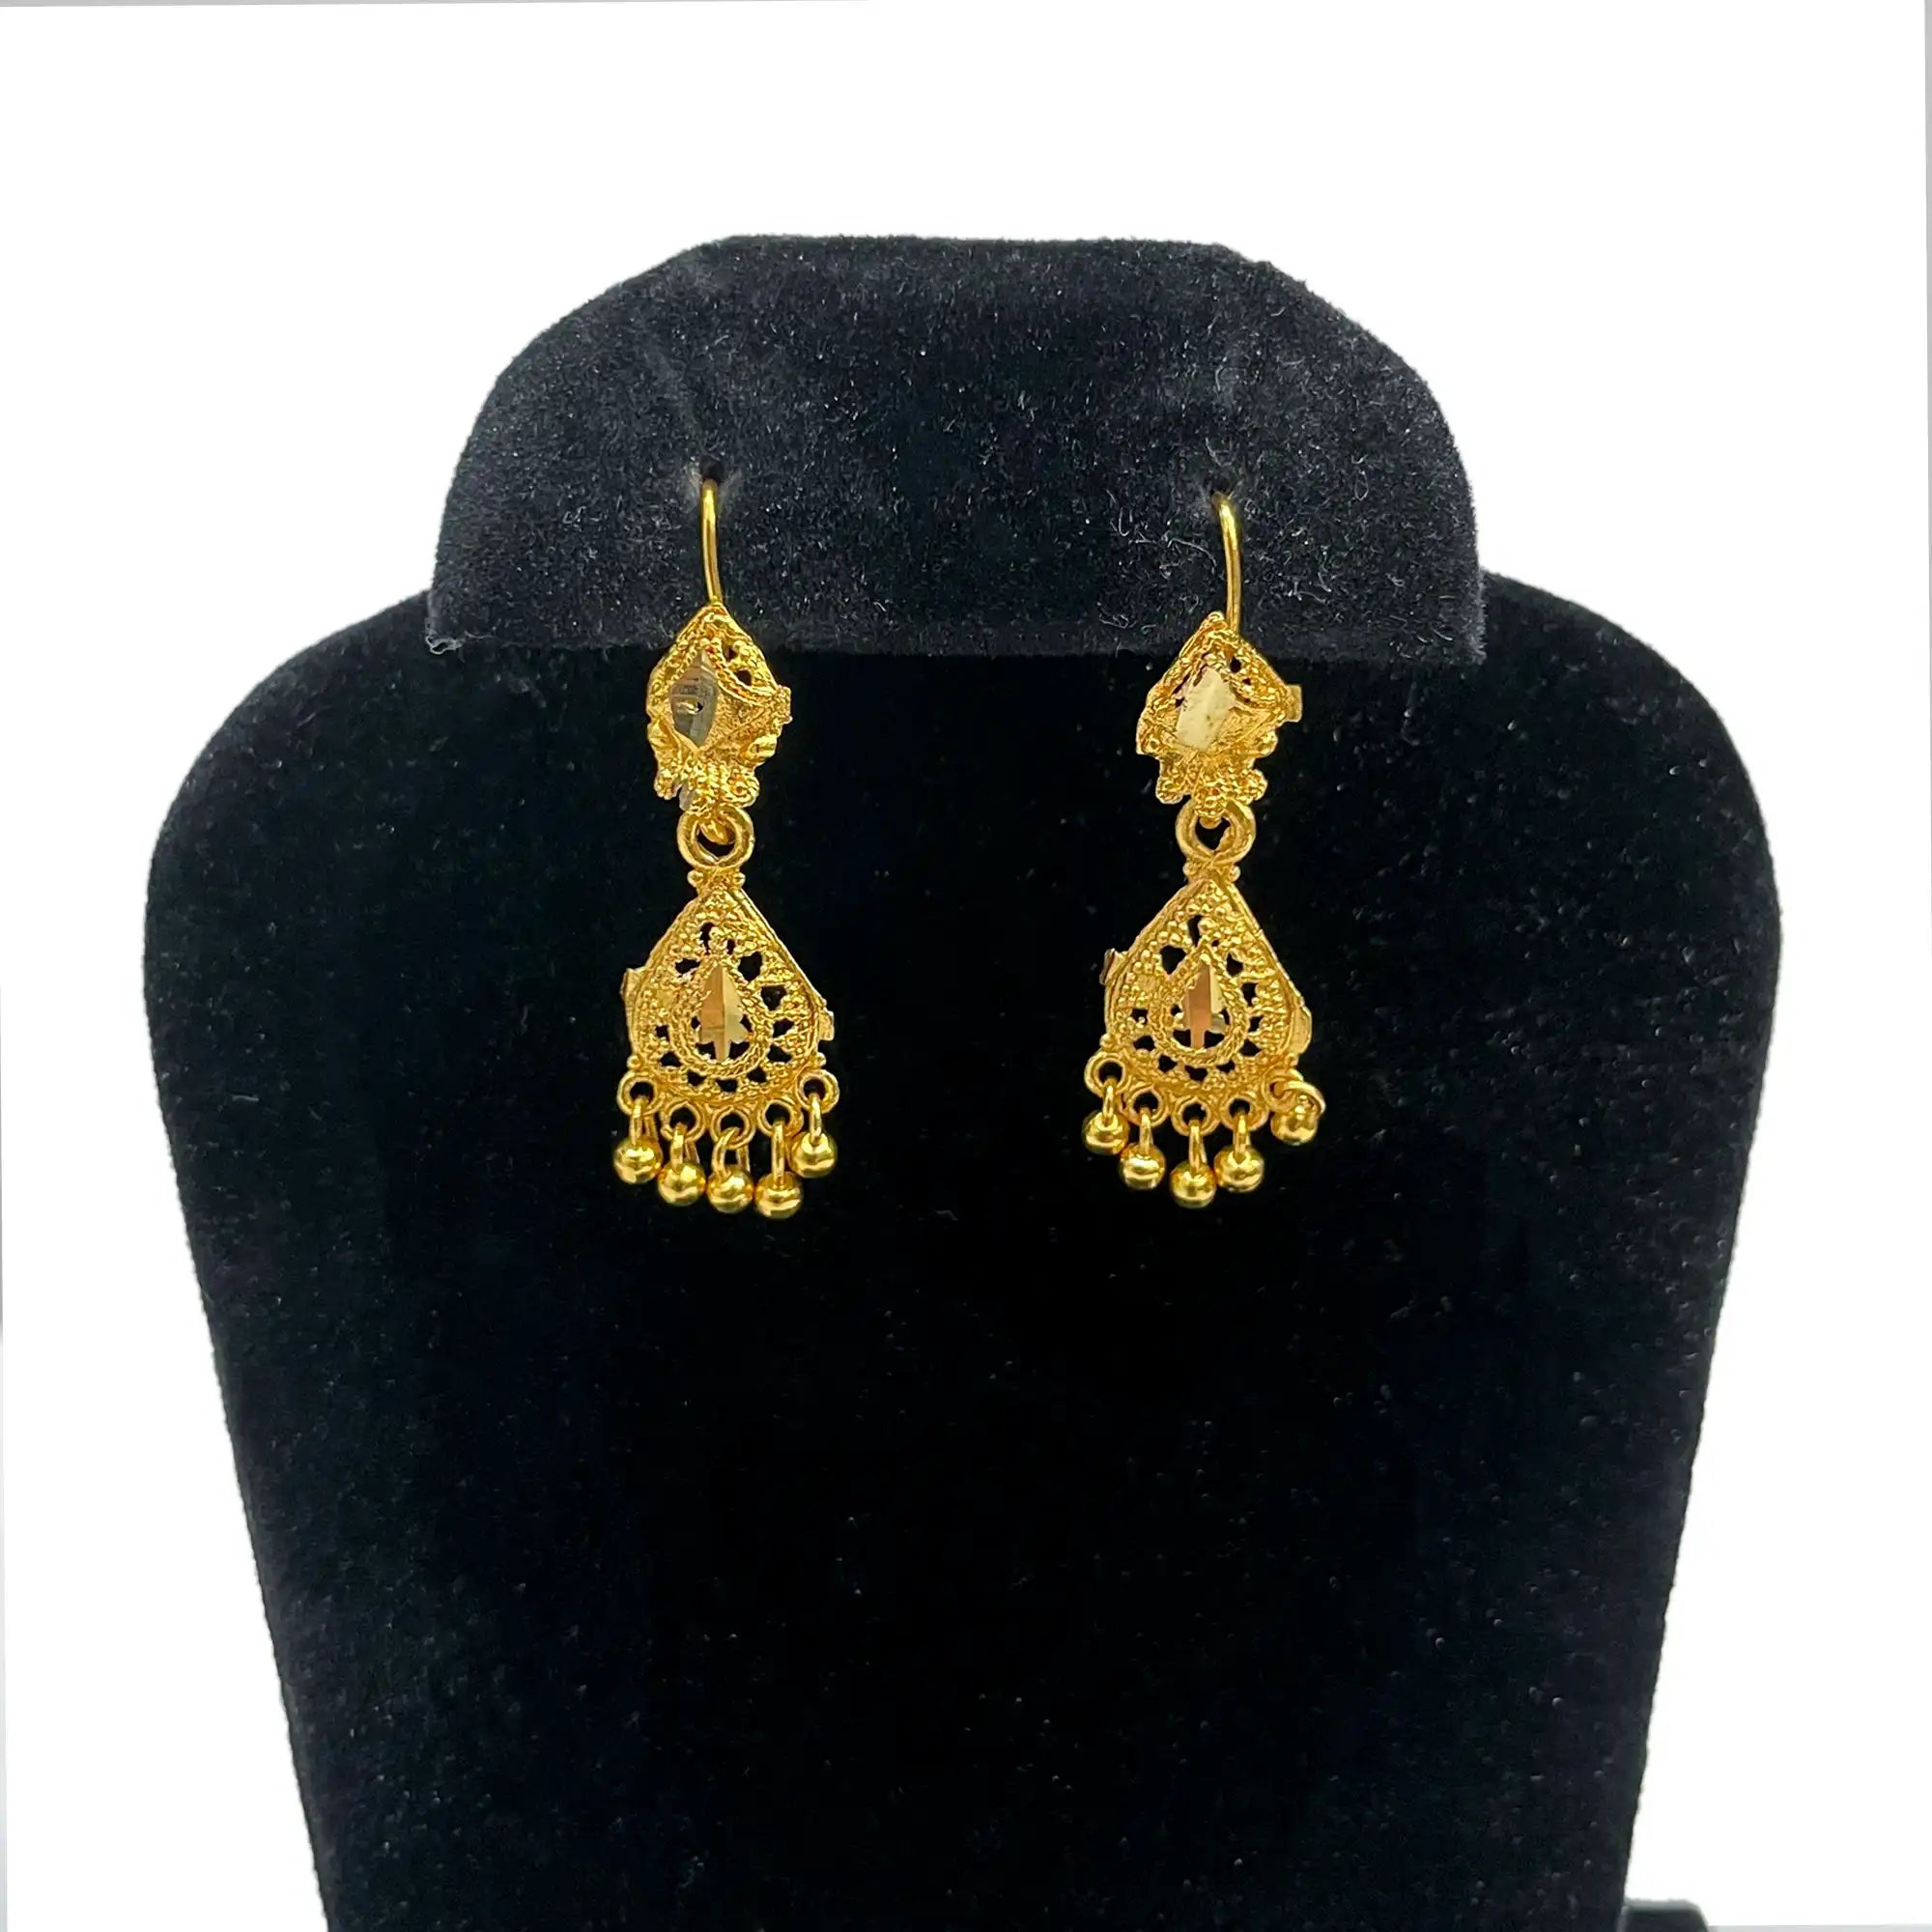 ethinic earrings, punjabi jewelry, statement earrings, designer earrings